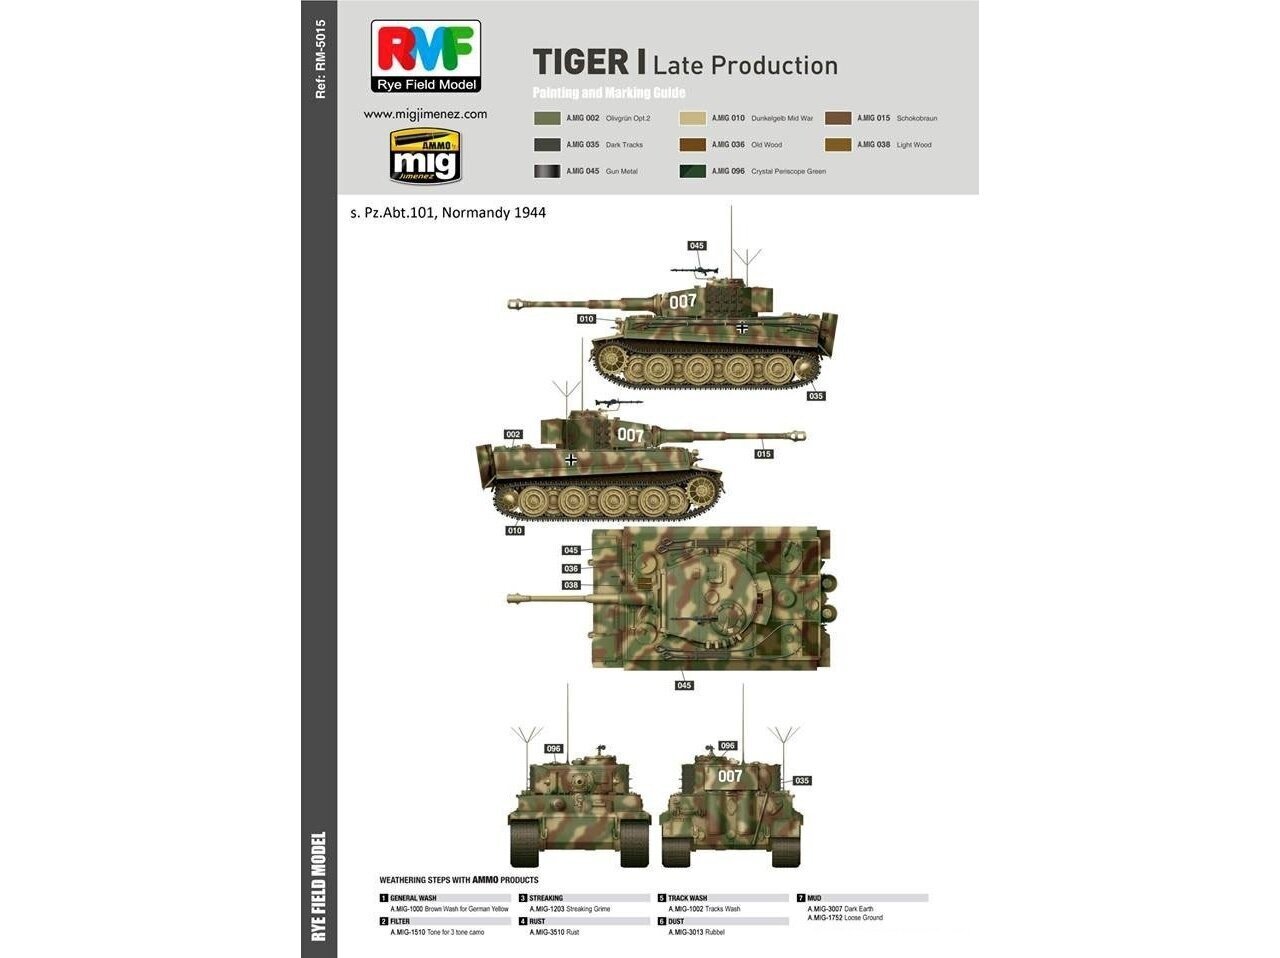 Konstruktorius Rye Field Model - Sd.Kfz. 181 Pz.kpfw.VI Ausf. E Tiger I Late Production, 1/35, RFM-5015, 8 m.+ цена и информация | Konstruktoriai ir kaladėlės | pigu.lt